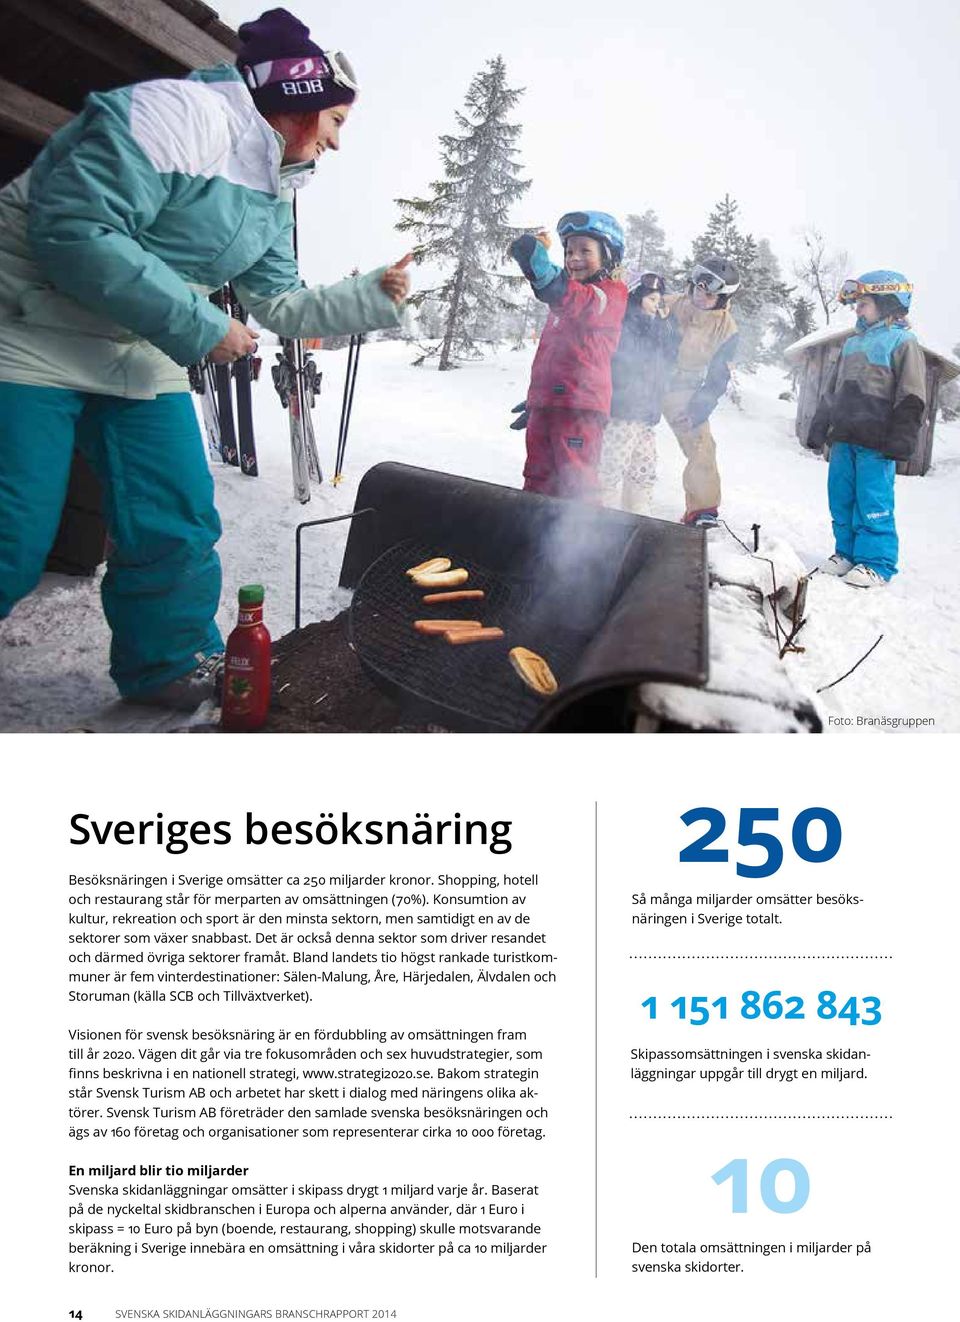 Bland landets tio högst rankade turistkommuner är fem vinterdestinationer: Sälen-Malung, Åre, Härjedalen, Älvdalen och Storuman (källa SCB och Tillväxtverket).